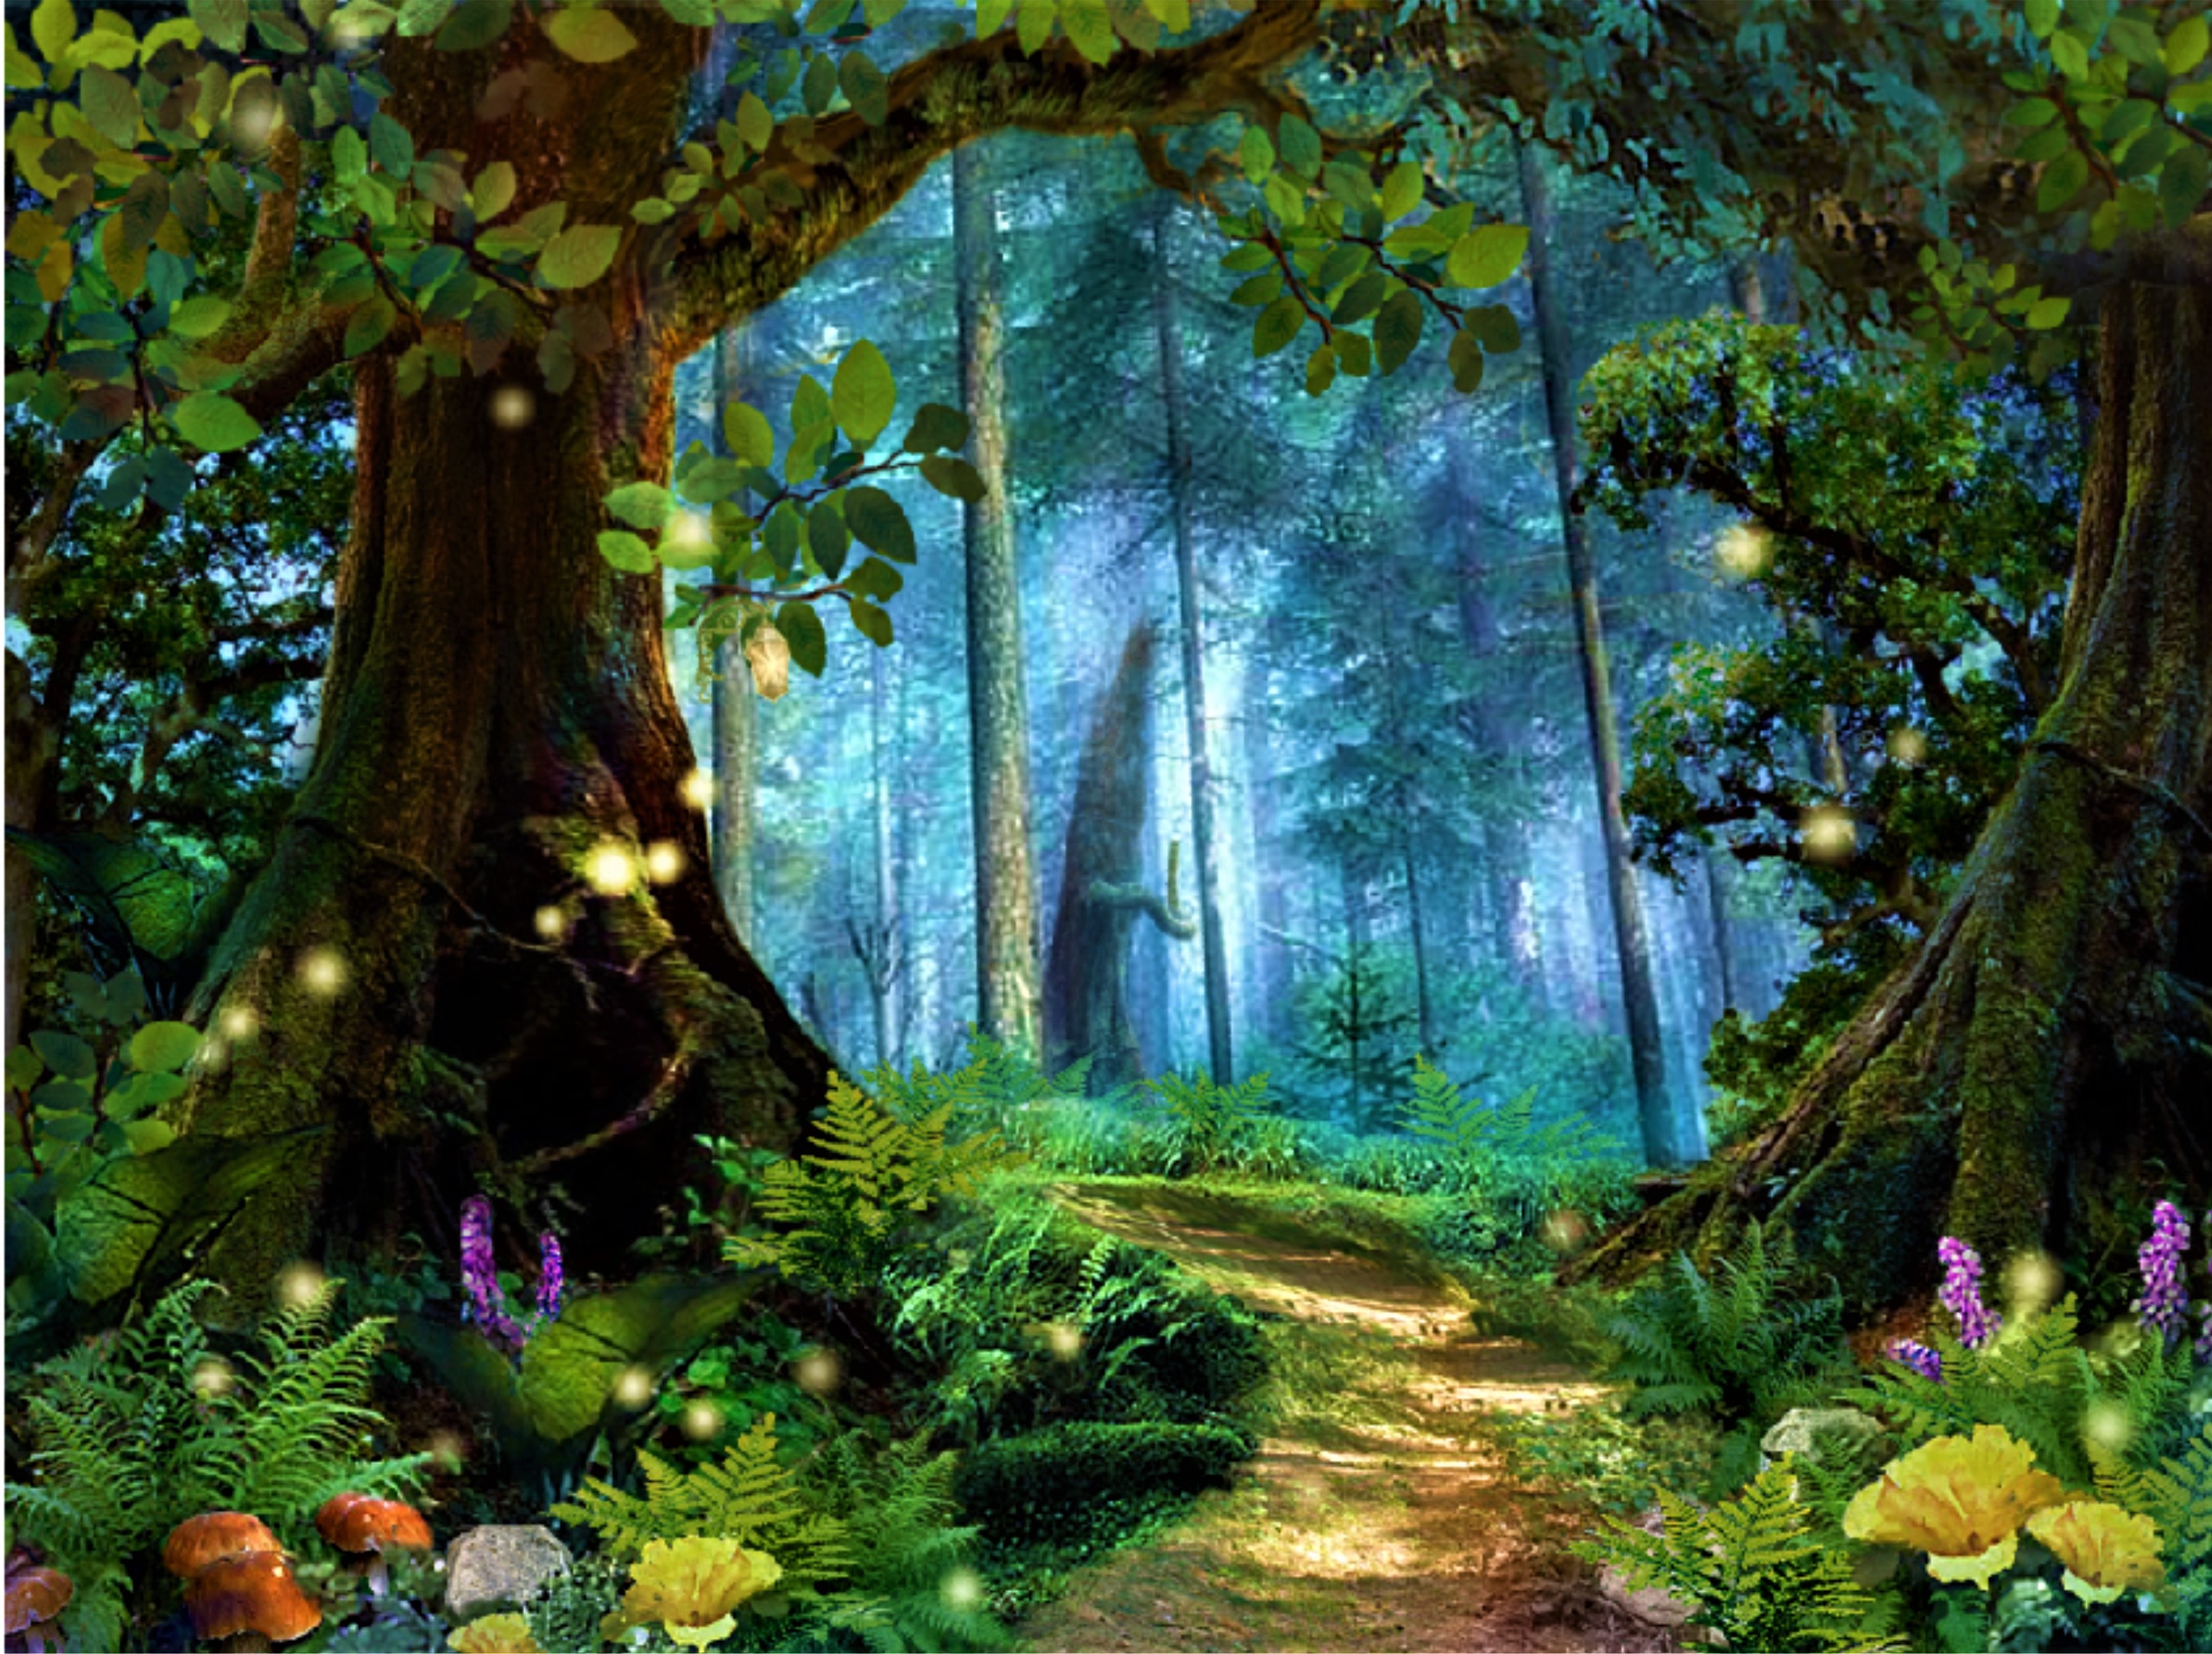 Скачать обои бесплатно Цветок, Лес, Дерево, Дорожка, Волшебный, Художественные картинка на рабочий стол ПК